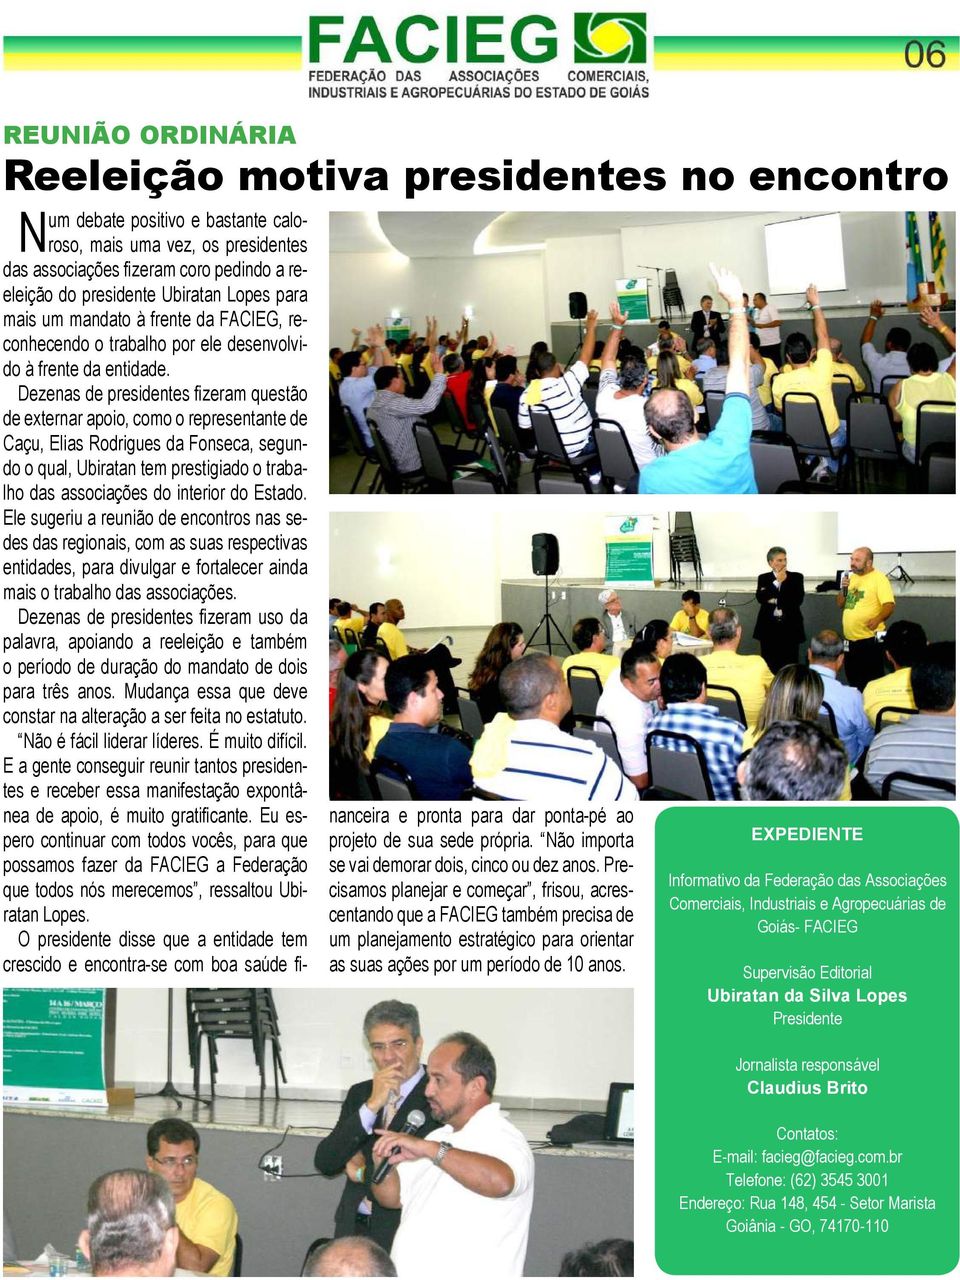 Dezenas de presidentes fizeram questão de externar apoio, como o representante de Caçu, Elias Rodrigues da Fonseca, segundo o qual, Ubiratan tem prestigiado o trabalho das associações do interior do